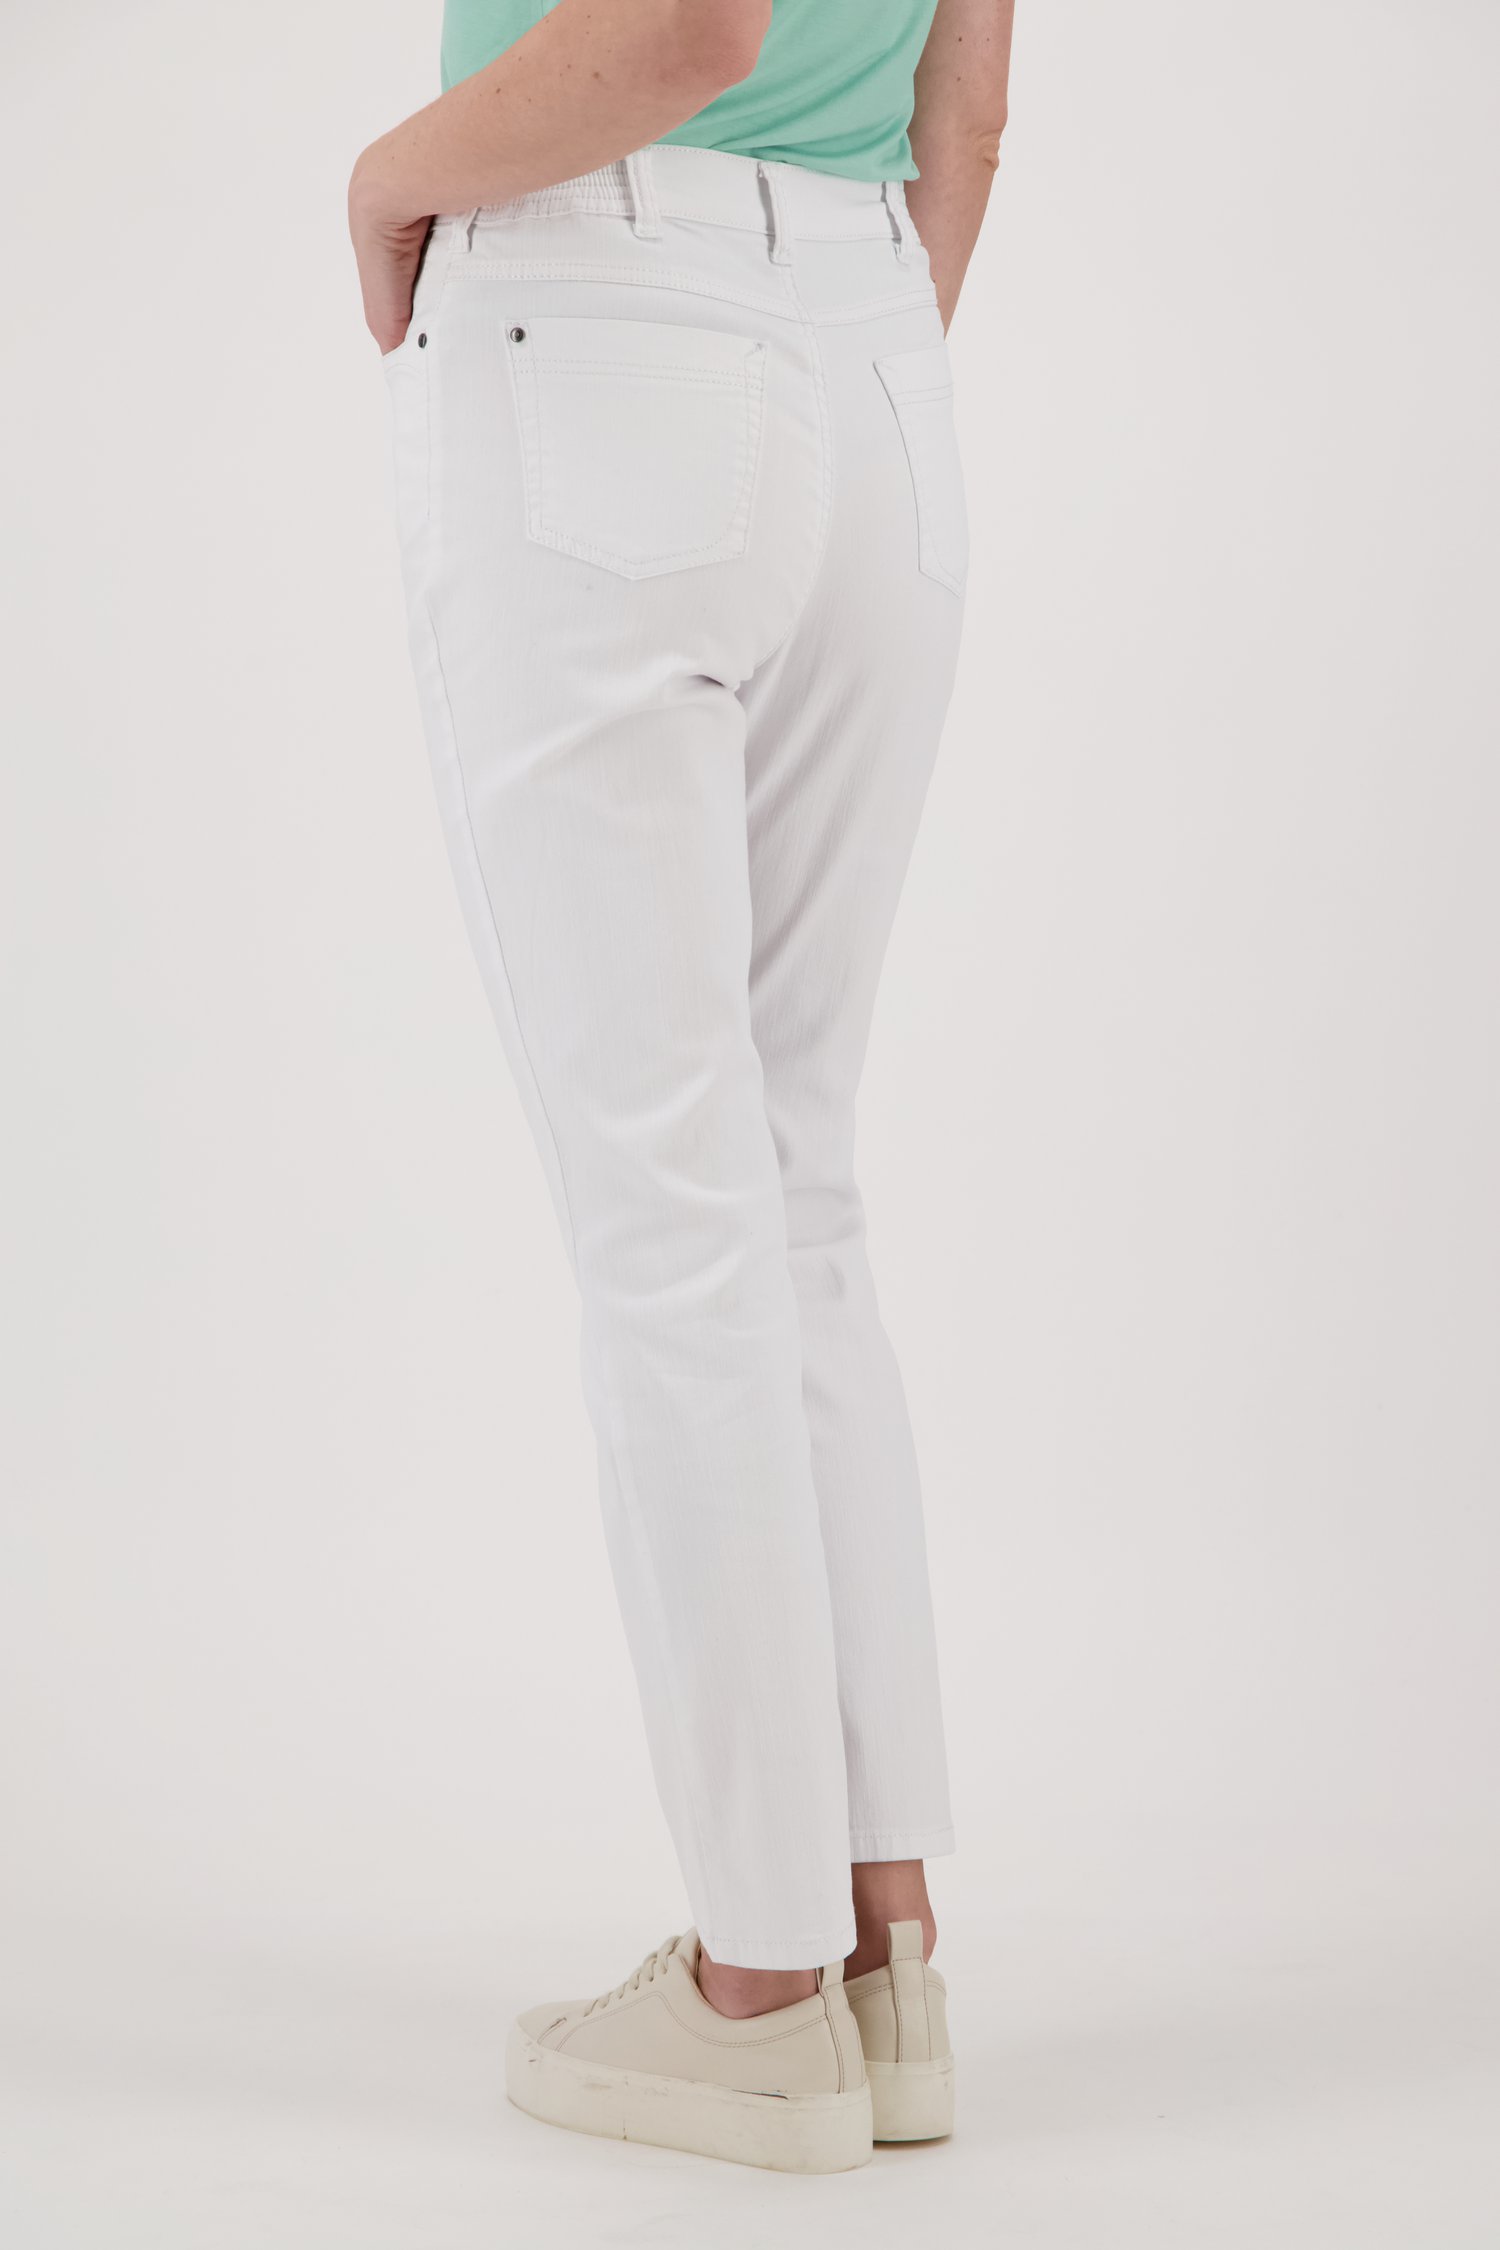 Witte jeans met elastische taille - straight fit van Anna Montana voor Dames